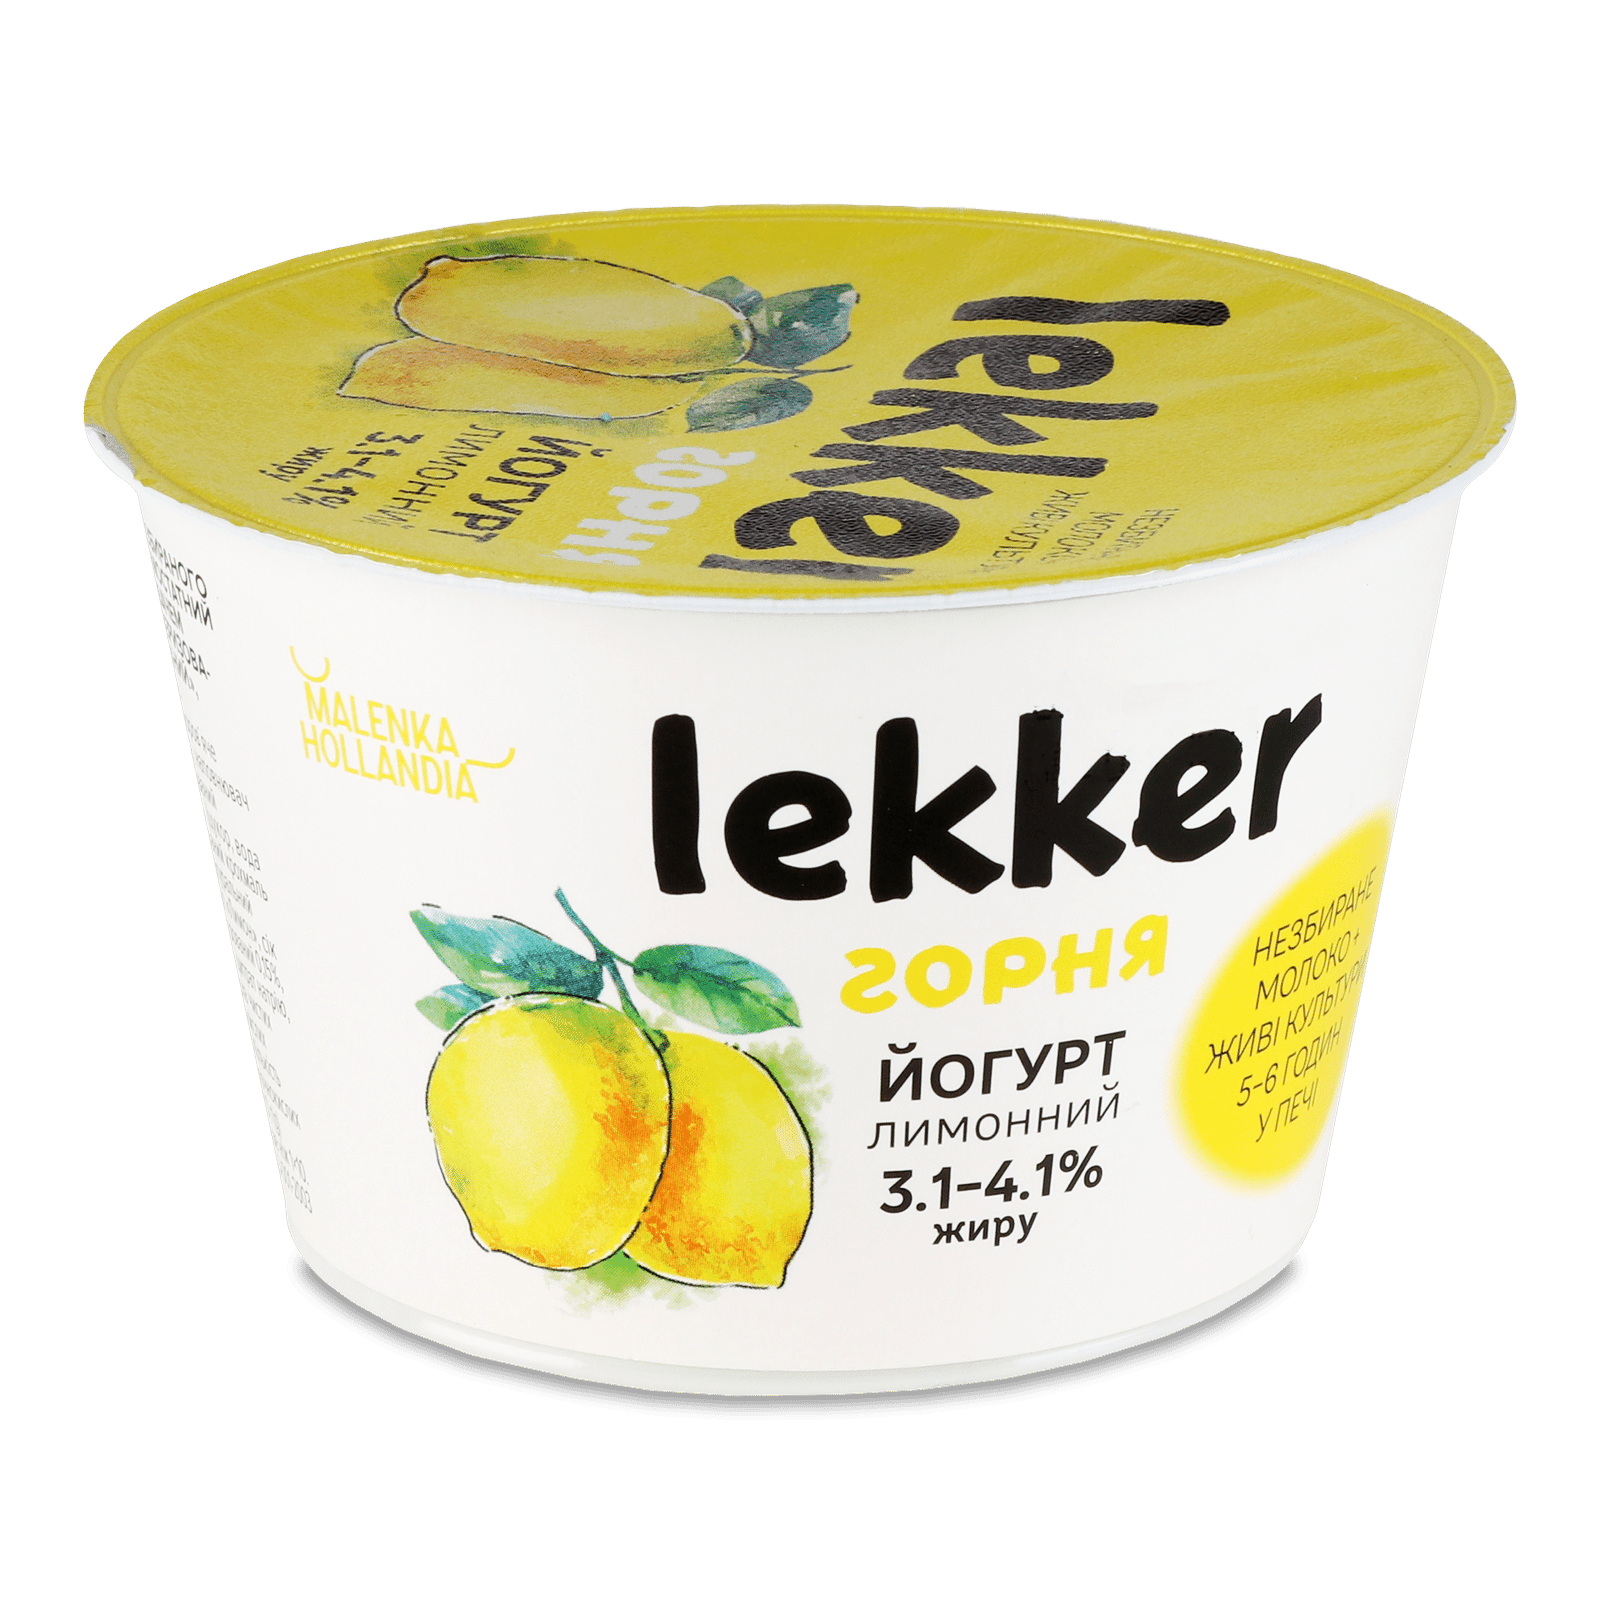 Йогурт Lekker лимон 3,1-4,1% - 1